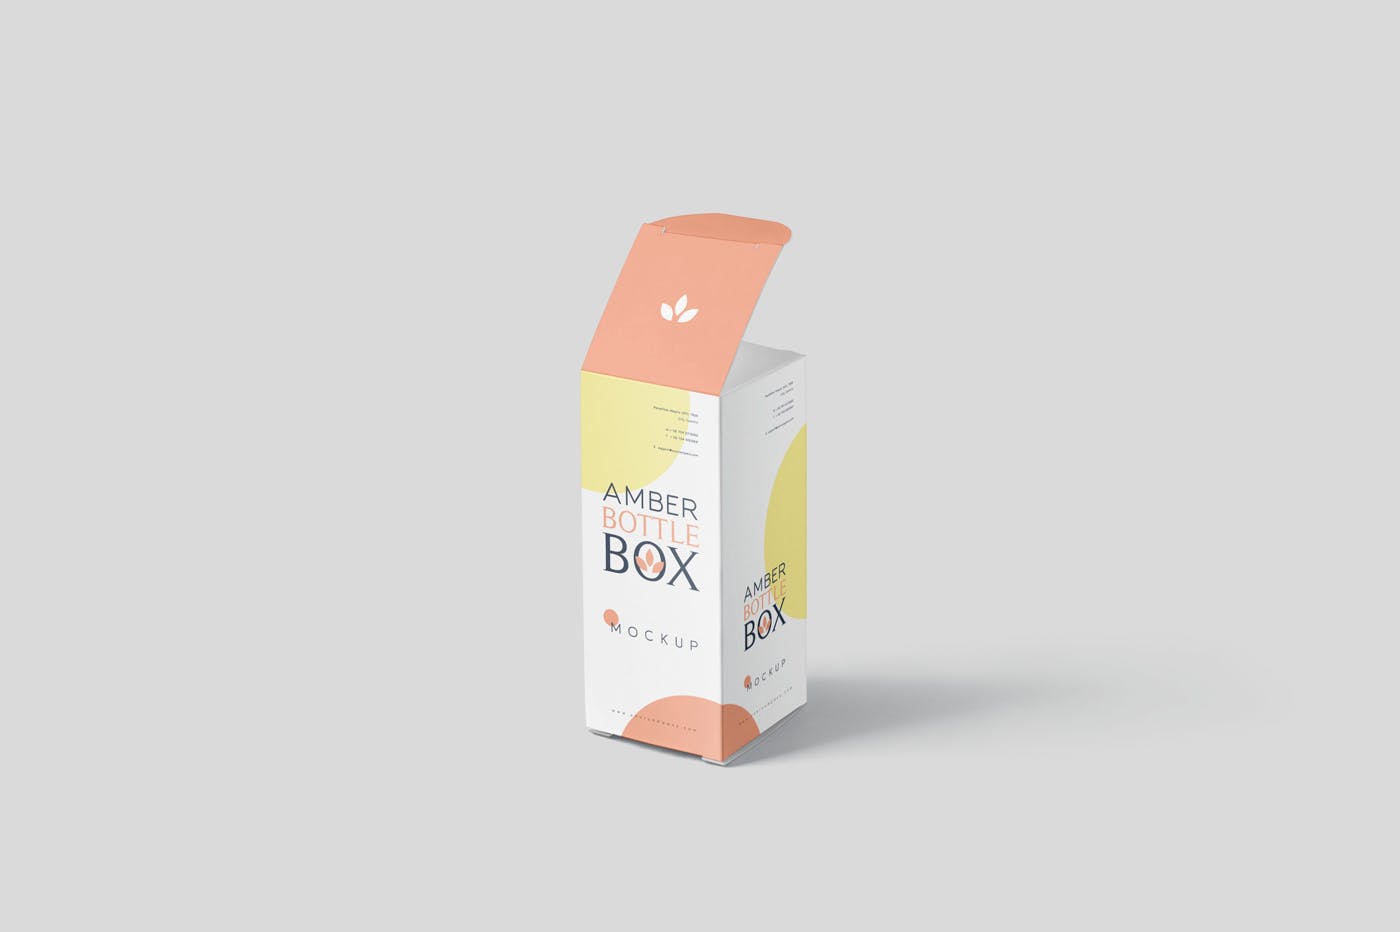 药物瓶&包装纸盒设计图第一素材精选模板 Amber Bottle Box Mockup Set插图(5)